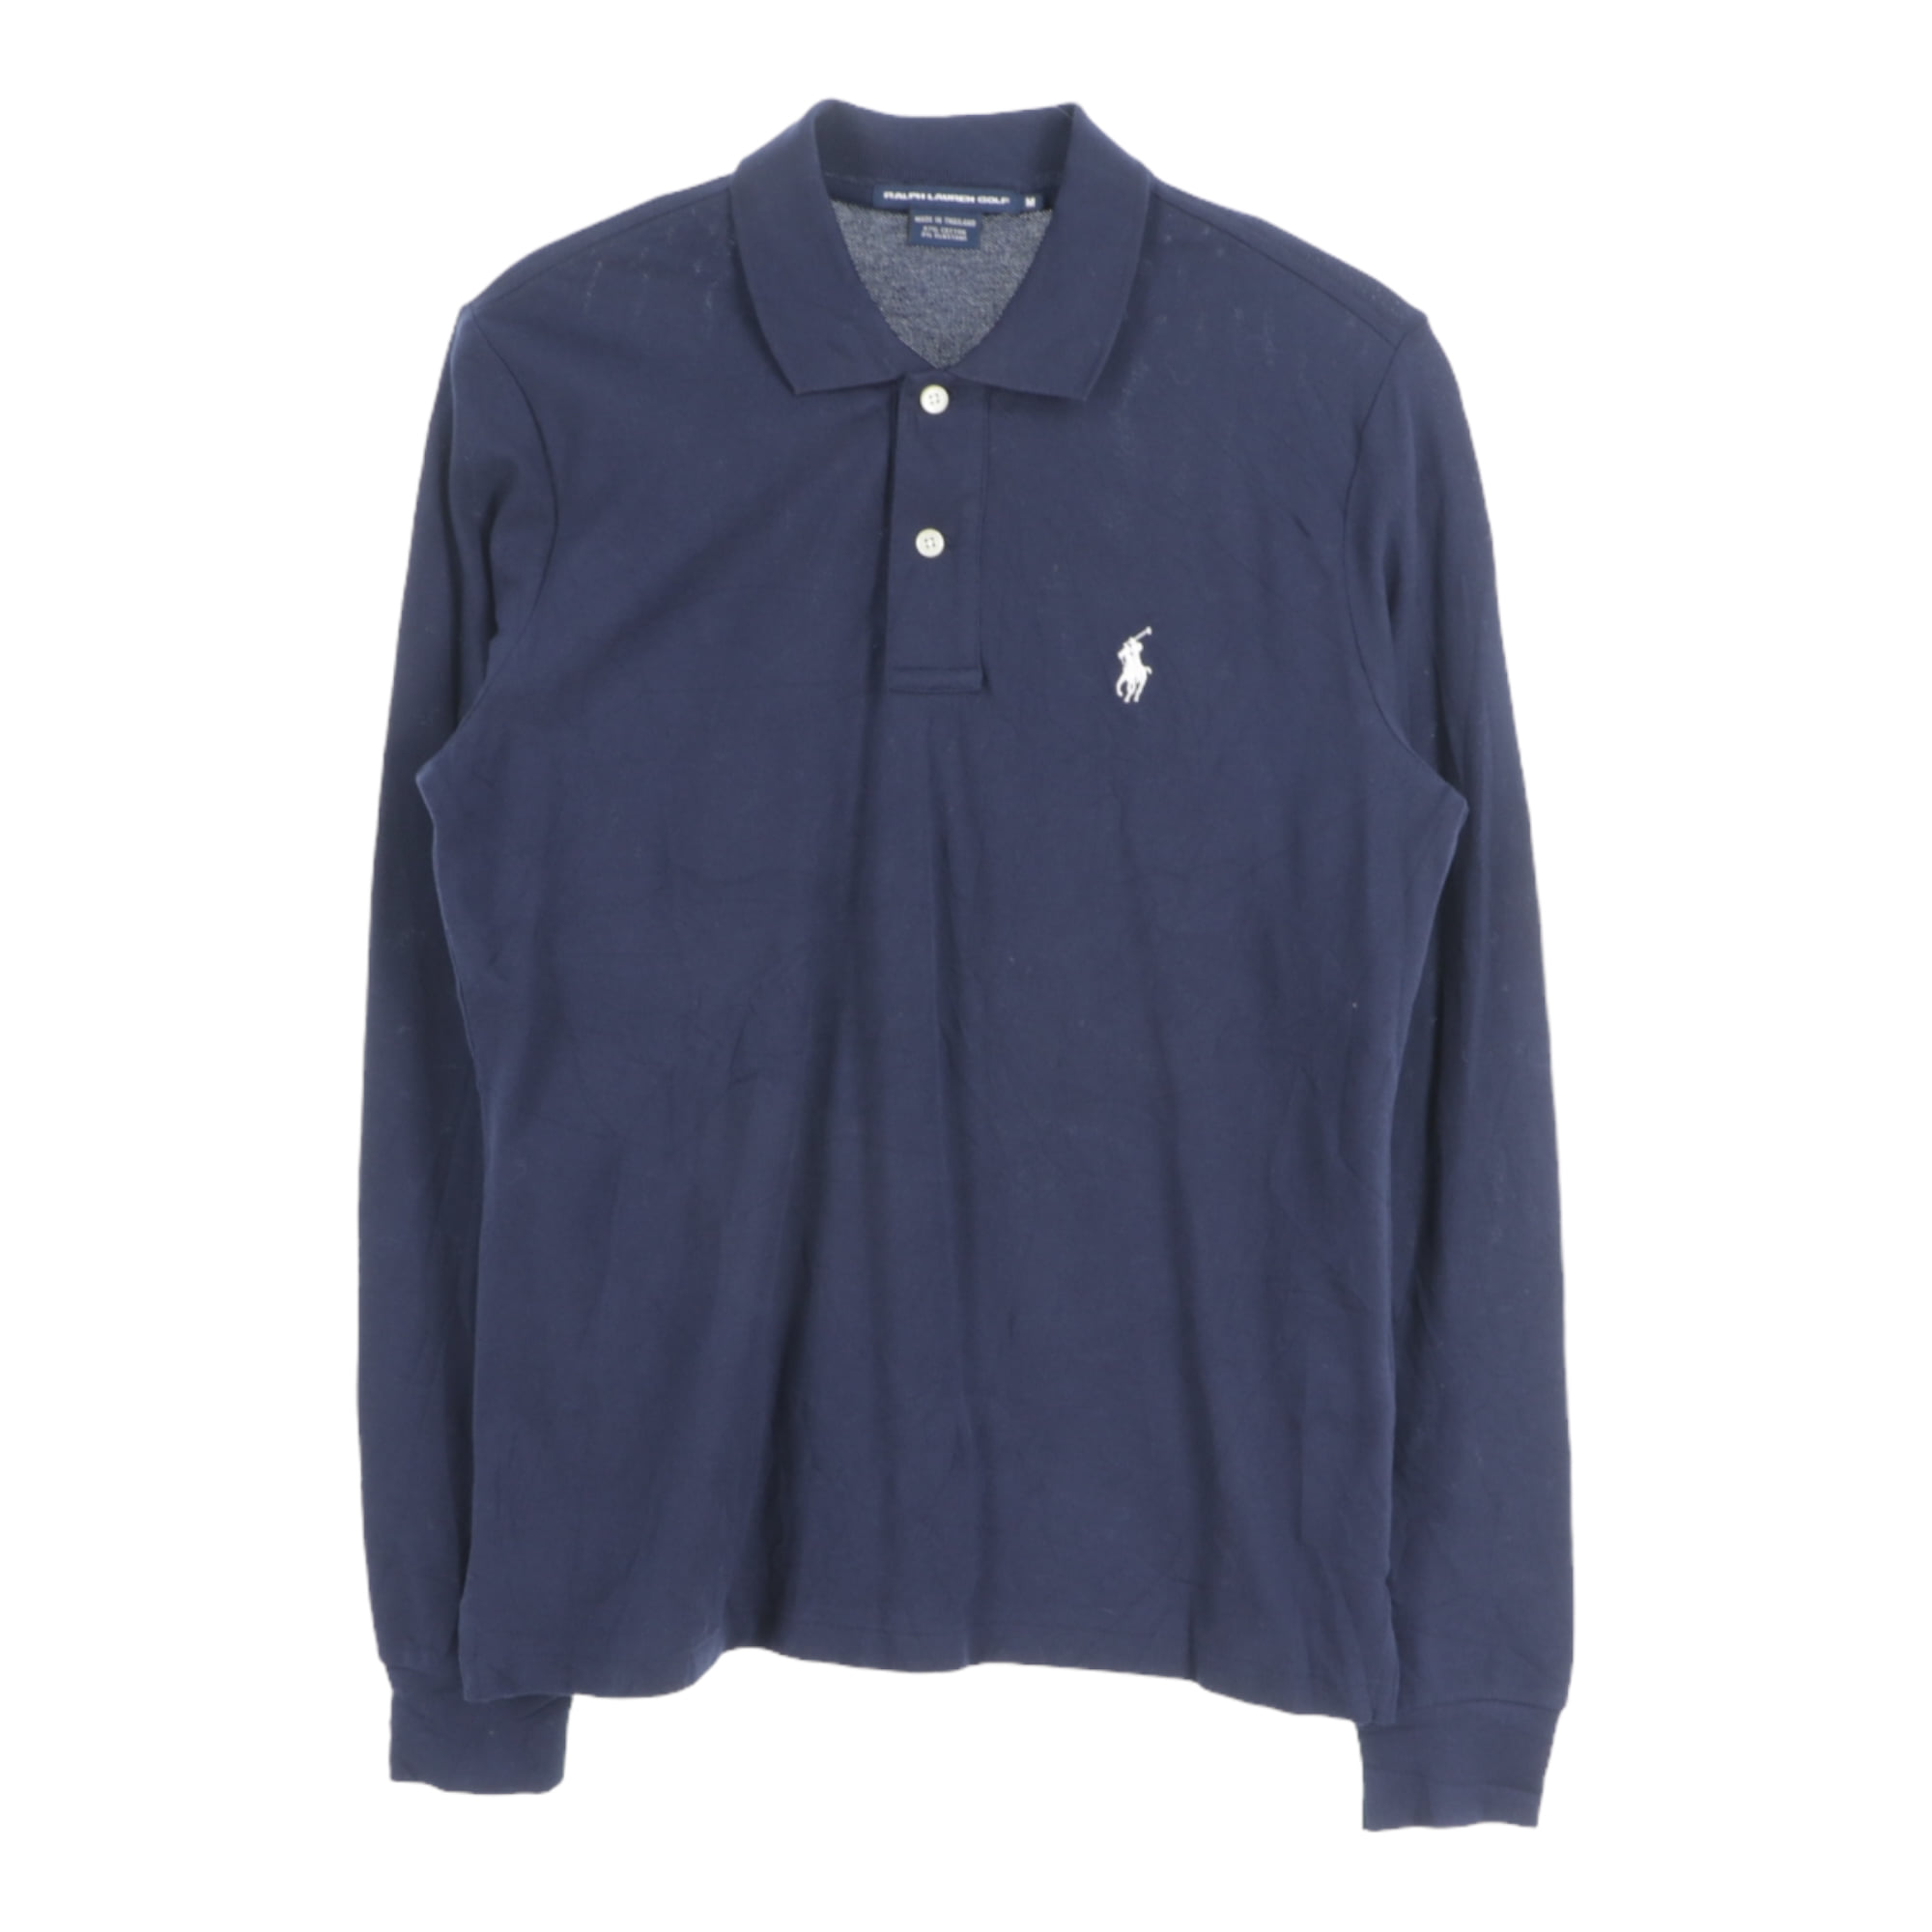 Polo Ralph Lauren Golf,T-Shirts